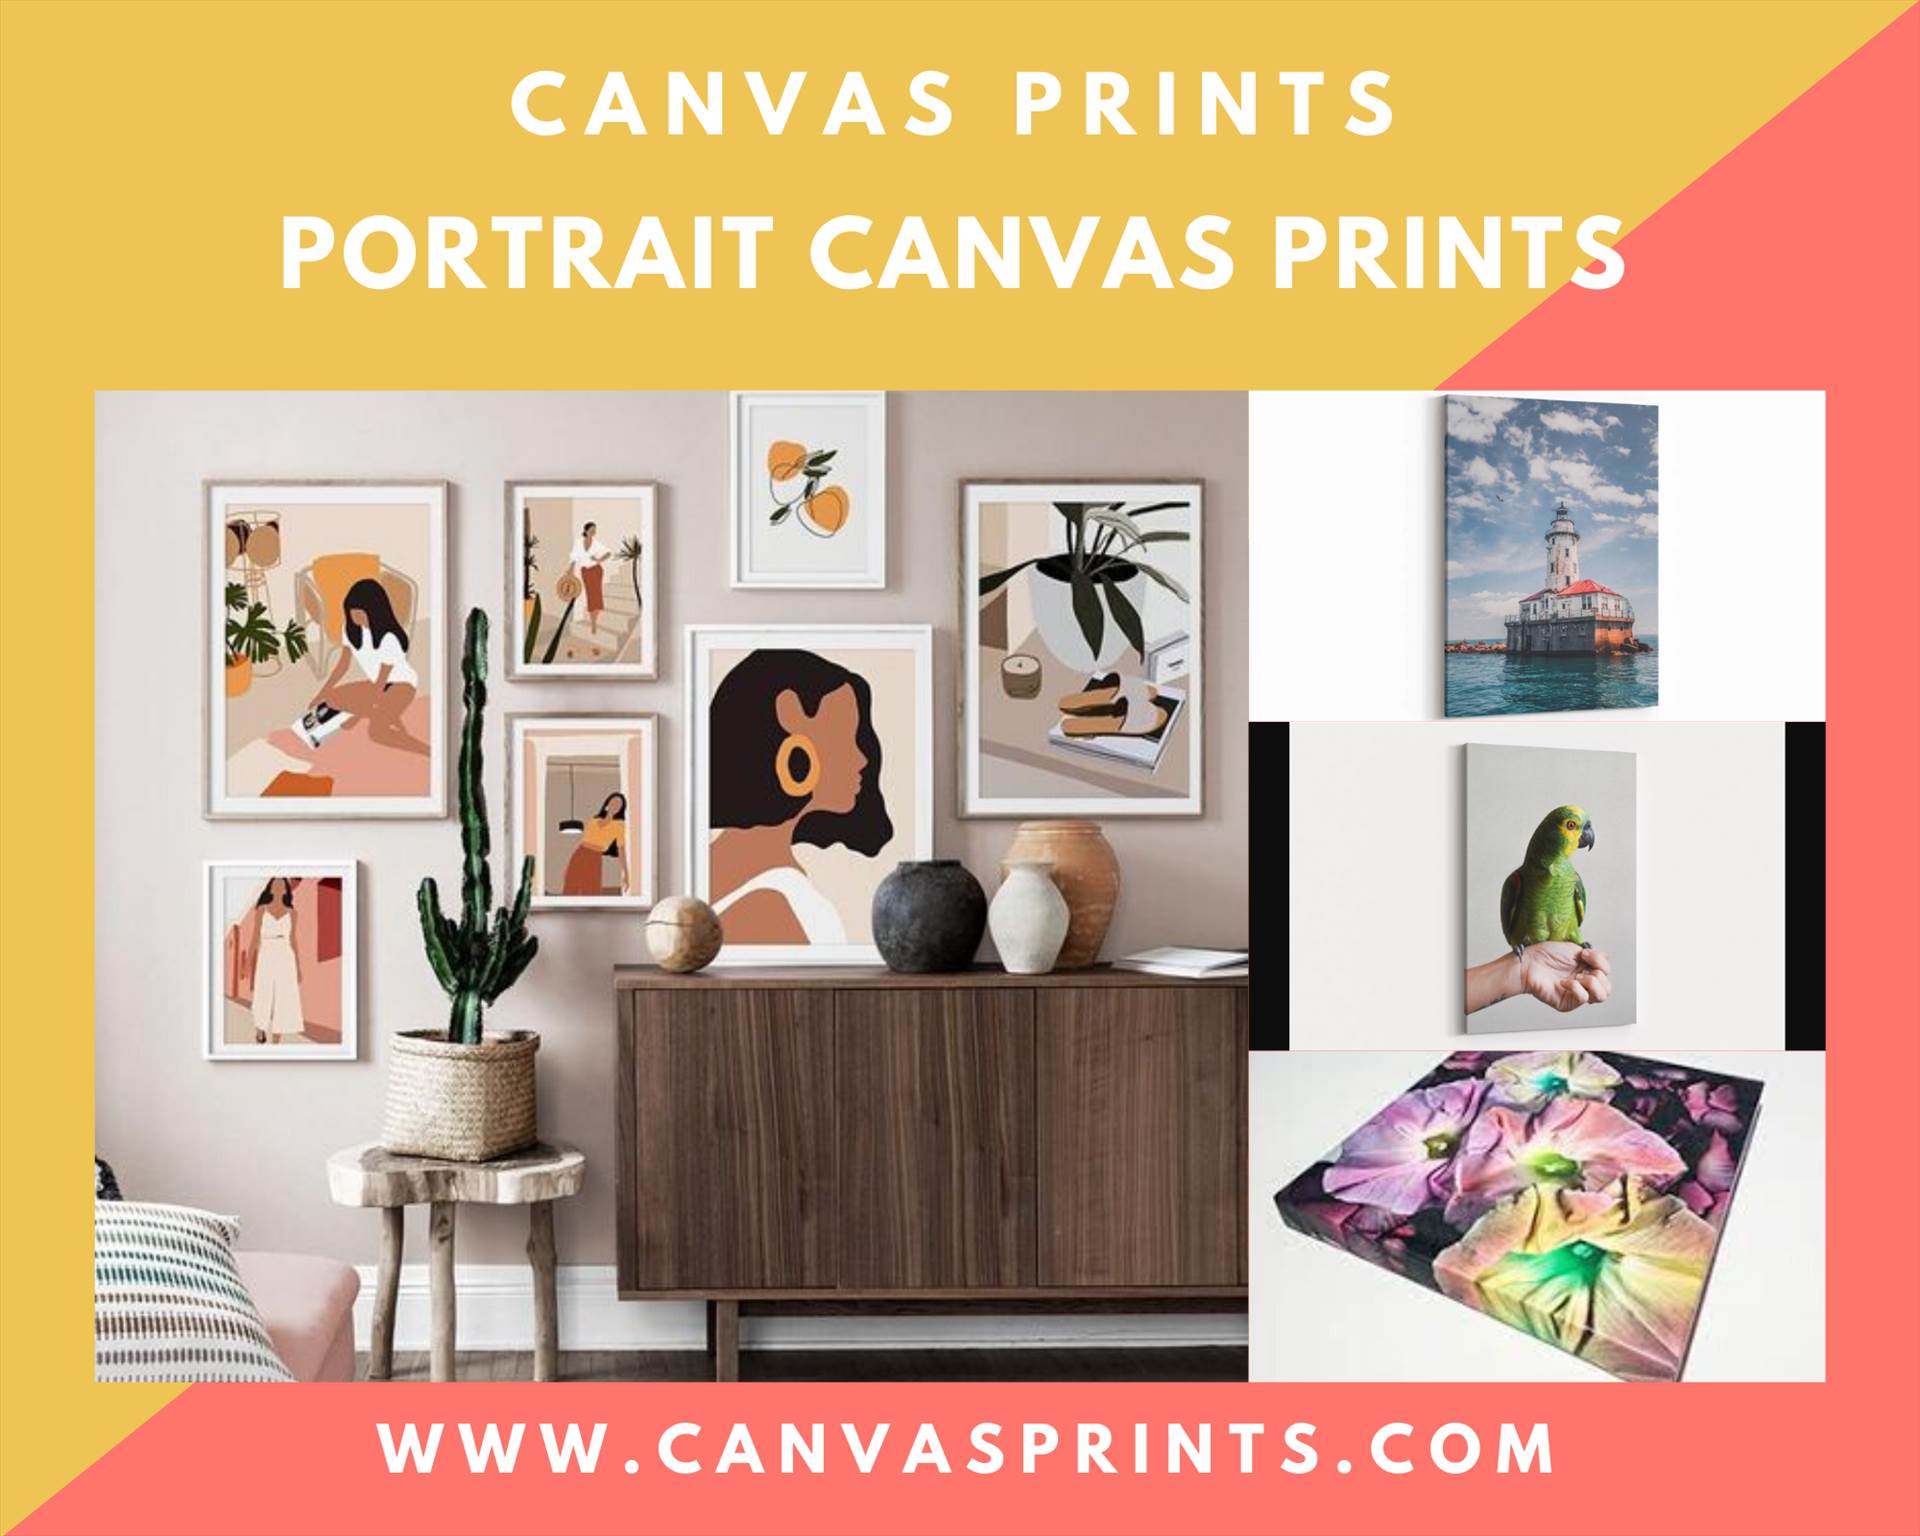 Portrait Canvas Prints-Canvasprints.com (2).png  by canvasprints